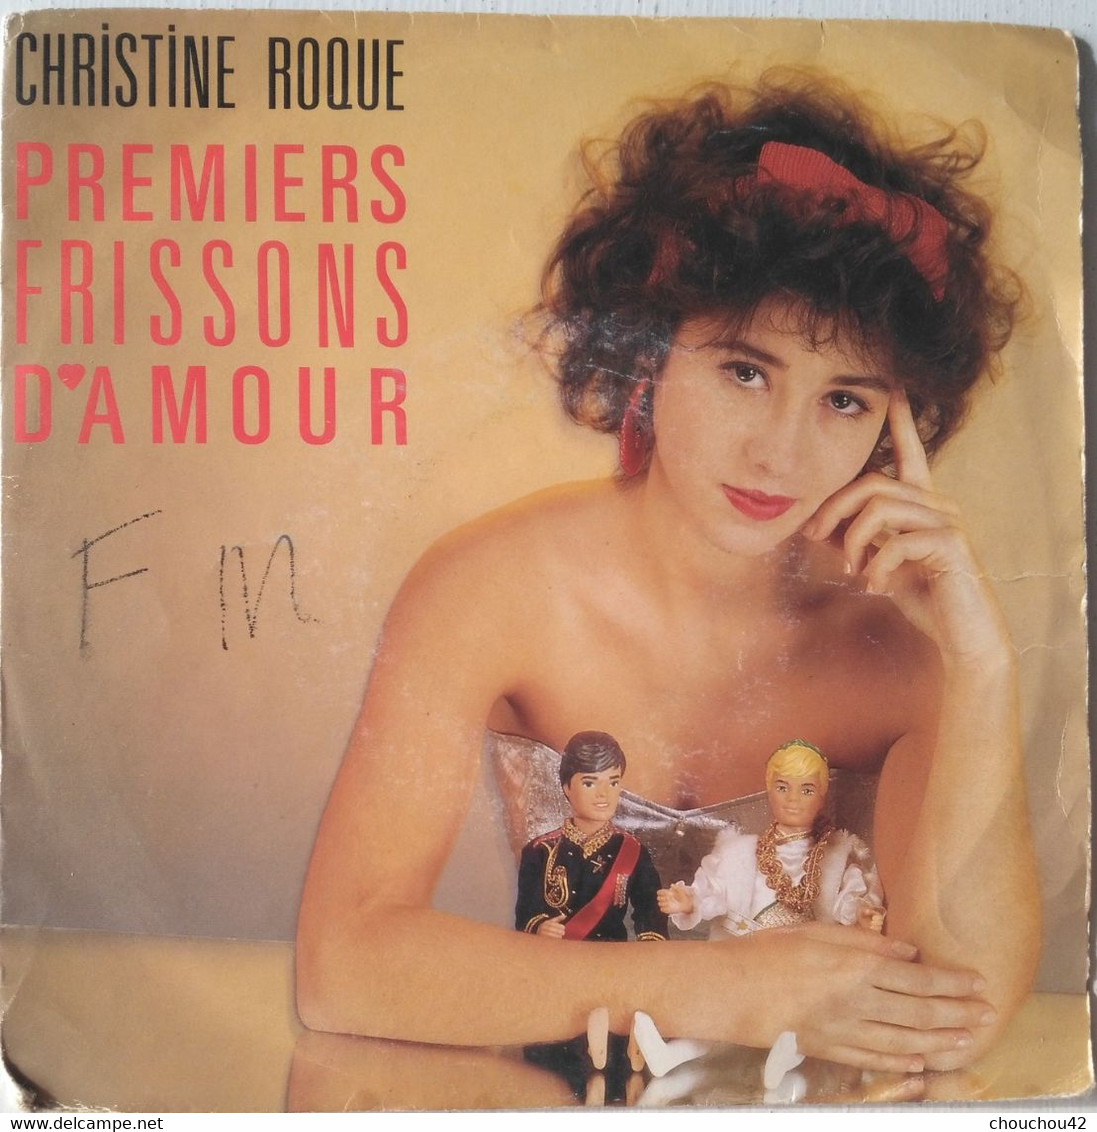 CHRISTINE ROQUE PREMIER FRISSON D'AMOUR - Limited Editions